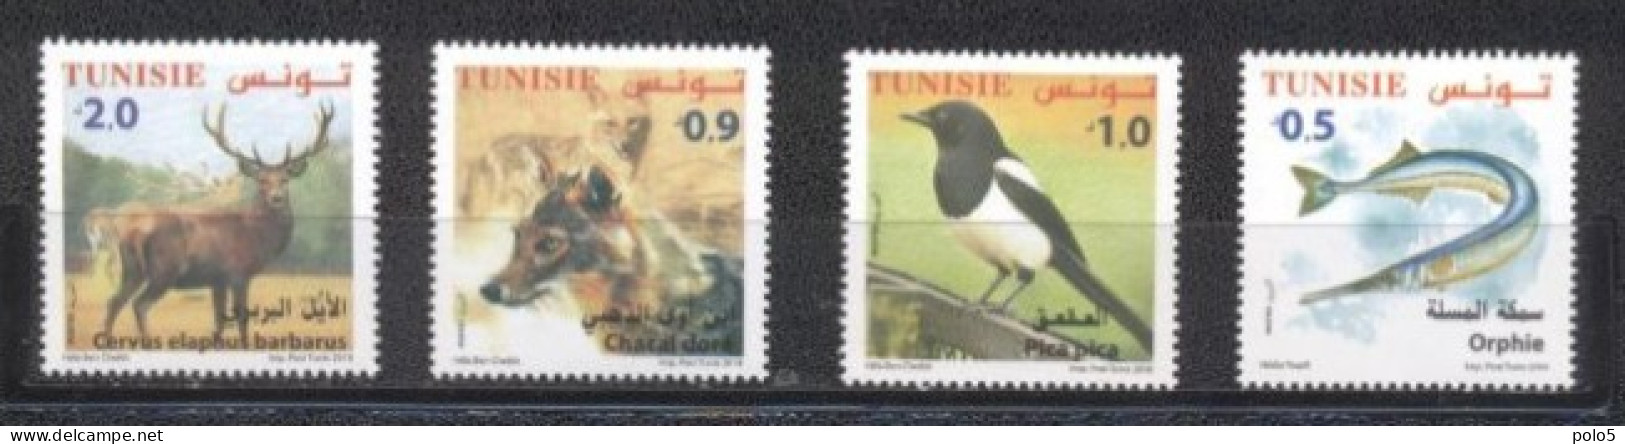 Tunisie 2018- Faune Terrestre Et Maritime De Tunisie Série (4v) - Tunesien (1956-...)